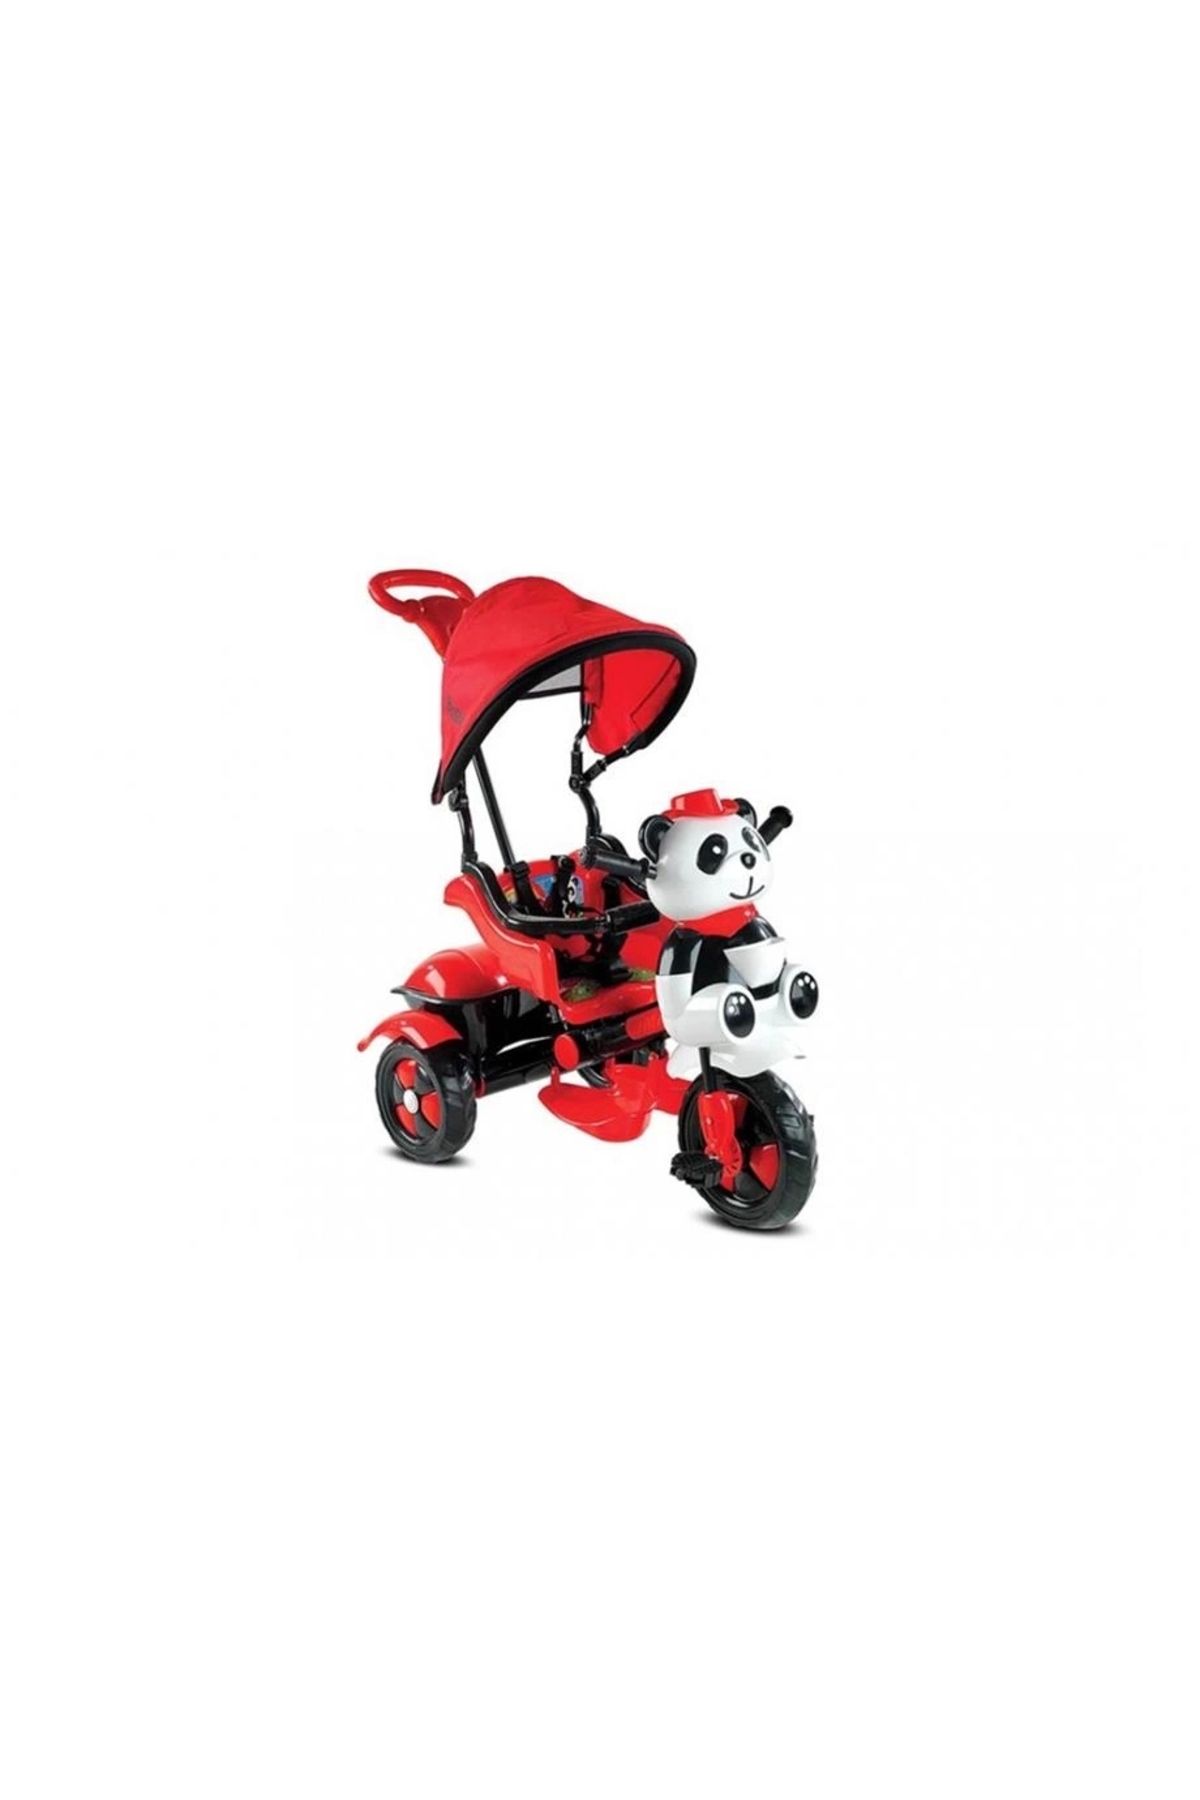 Babyhope Ünalbaby Kırmızı Little Panda 3 Tekerli Kontrollü Bisiklet 127-2021 Model